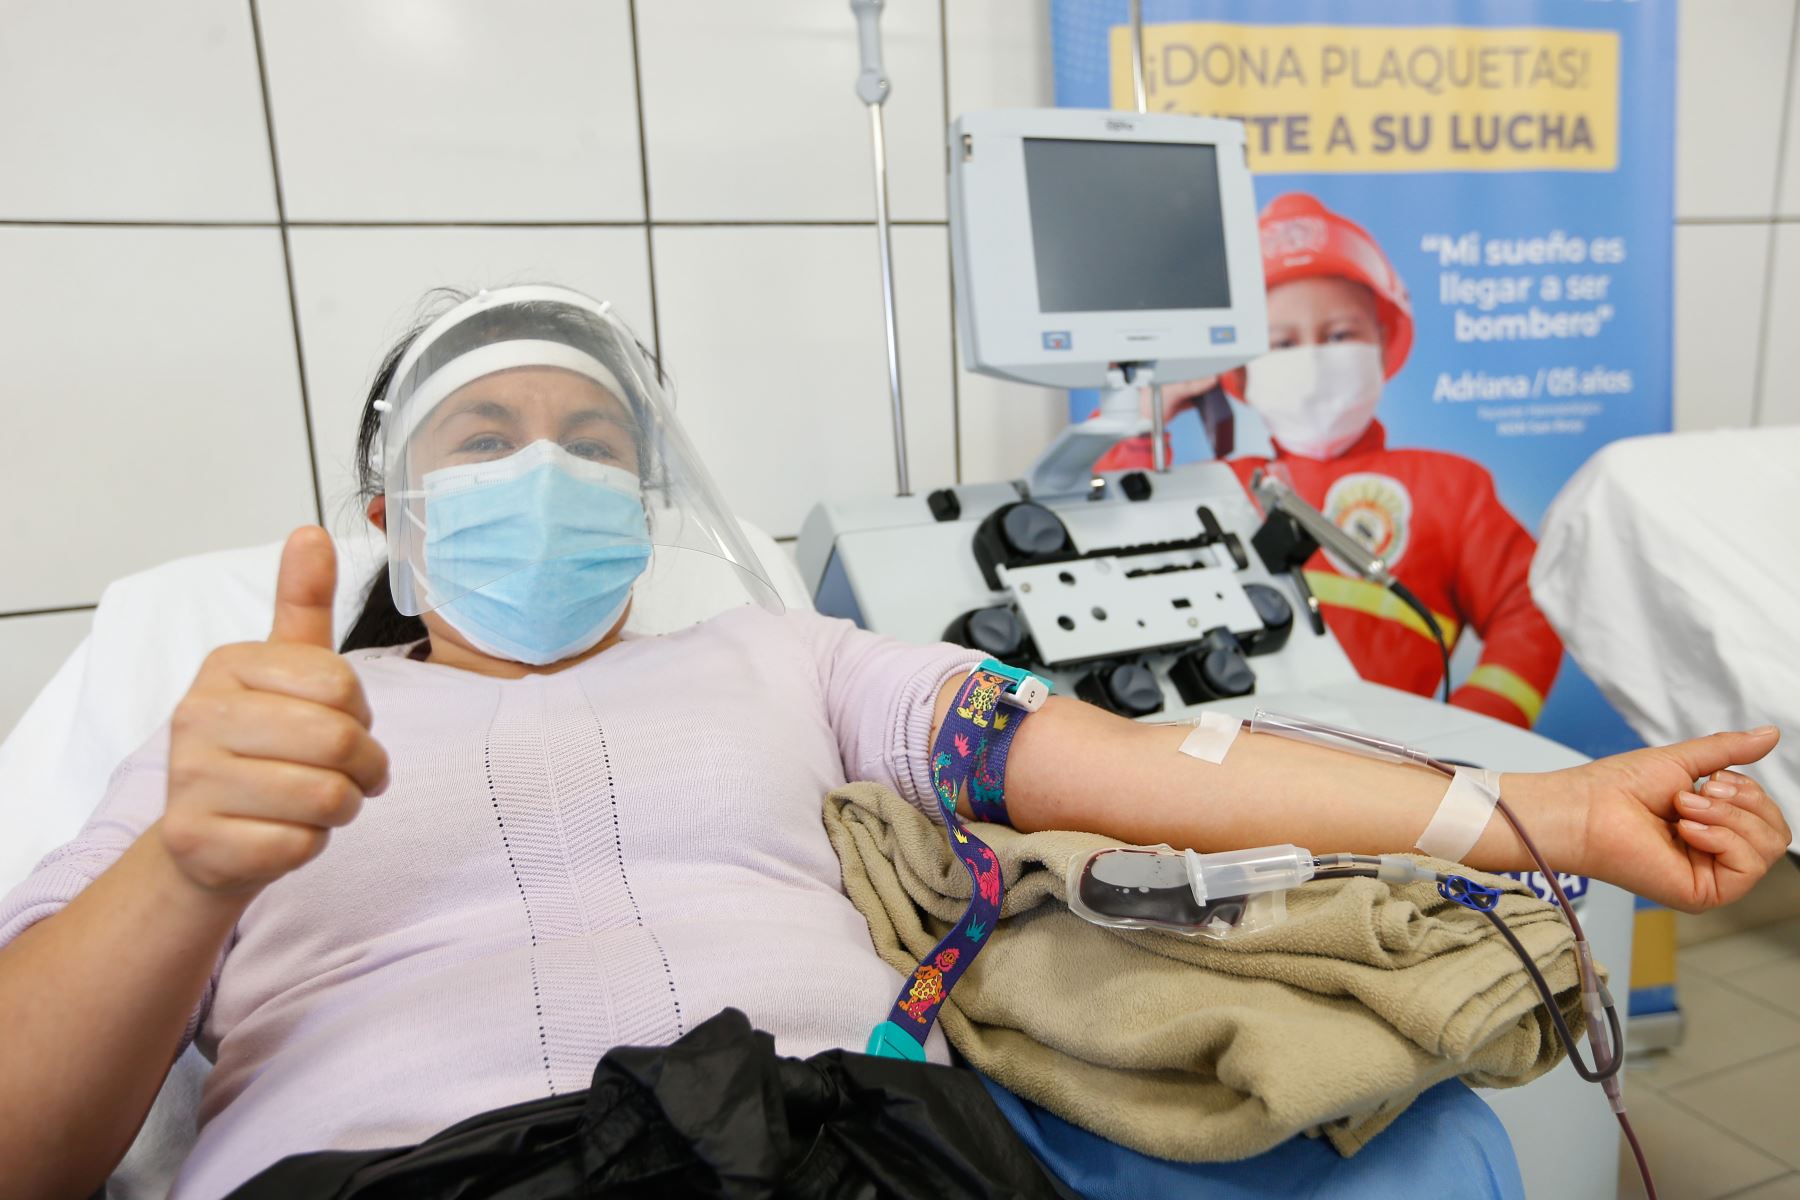 Ministro de Salud, Óscar Ugarte, en el marco del día mundial del donante de sangre, inaugura la ruta del donante en el Instituto Nacional de Salud del Niño - San Borja.
Foto: Minsa